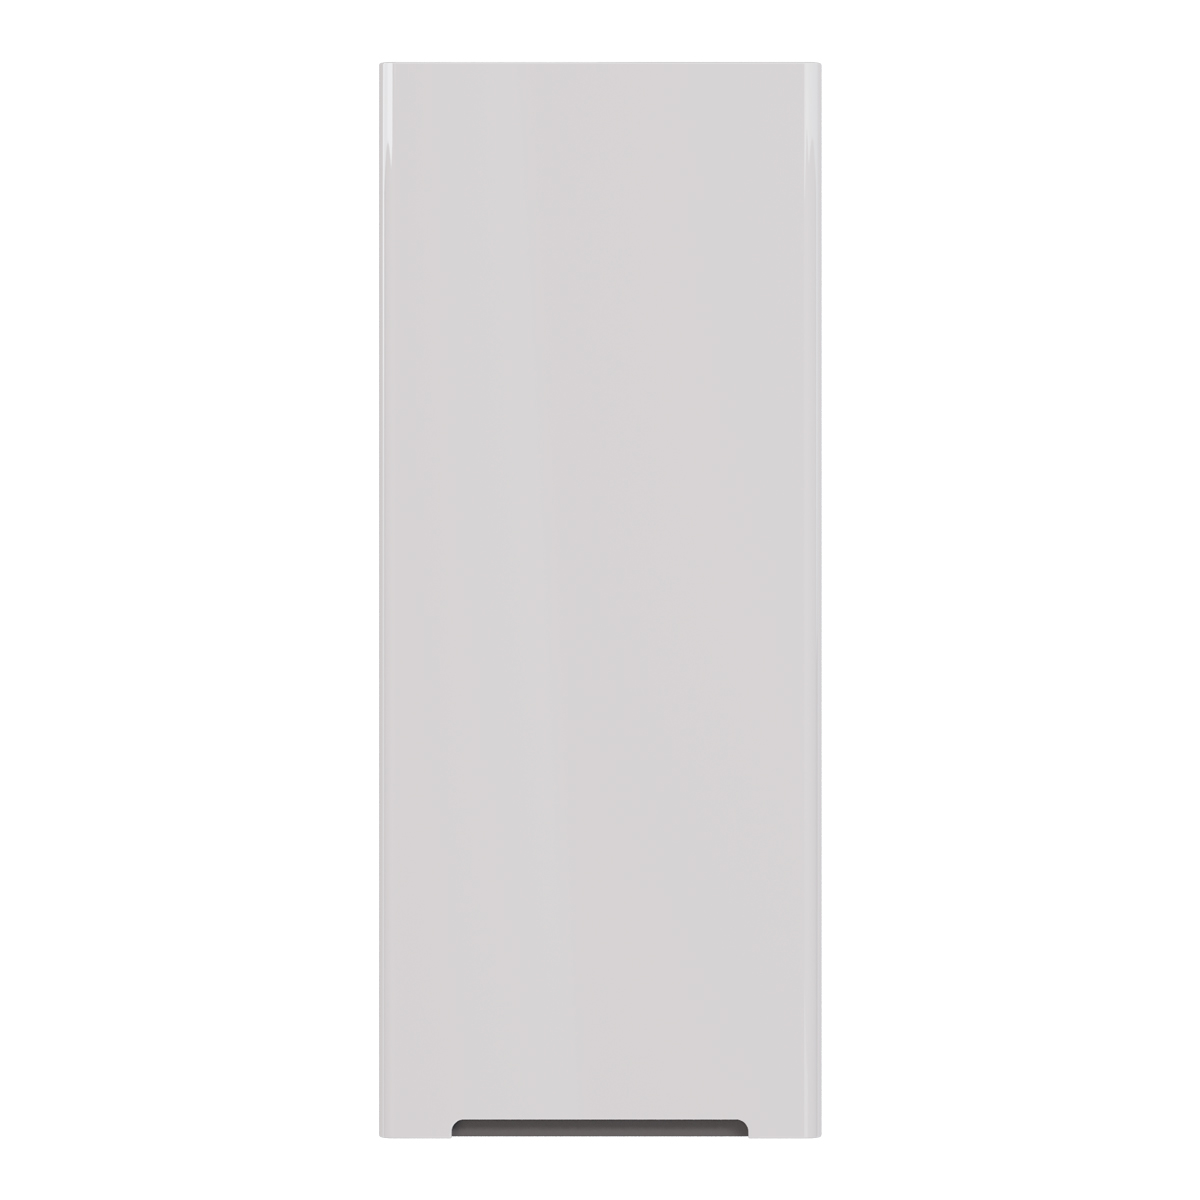 Полупенал Lemark BUNO 35 см подвесной, 1 дверный, правый, цвет корпуса, фасада: Белый глянец